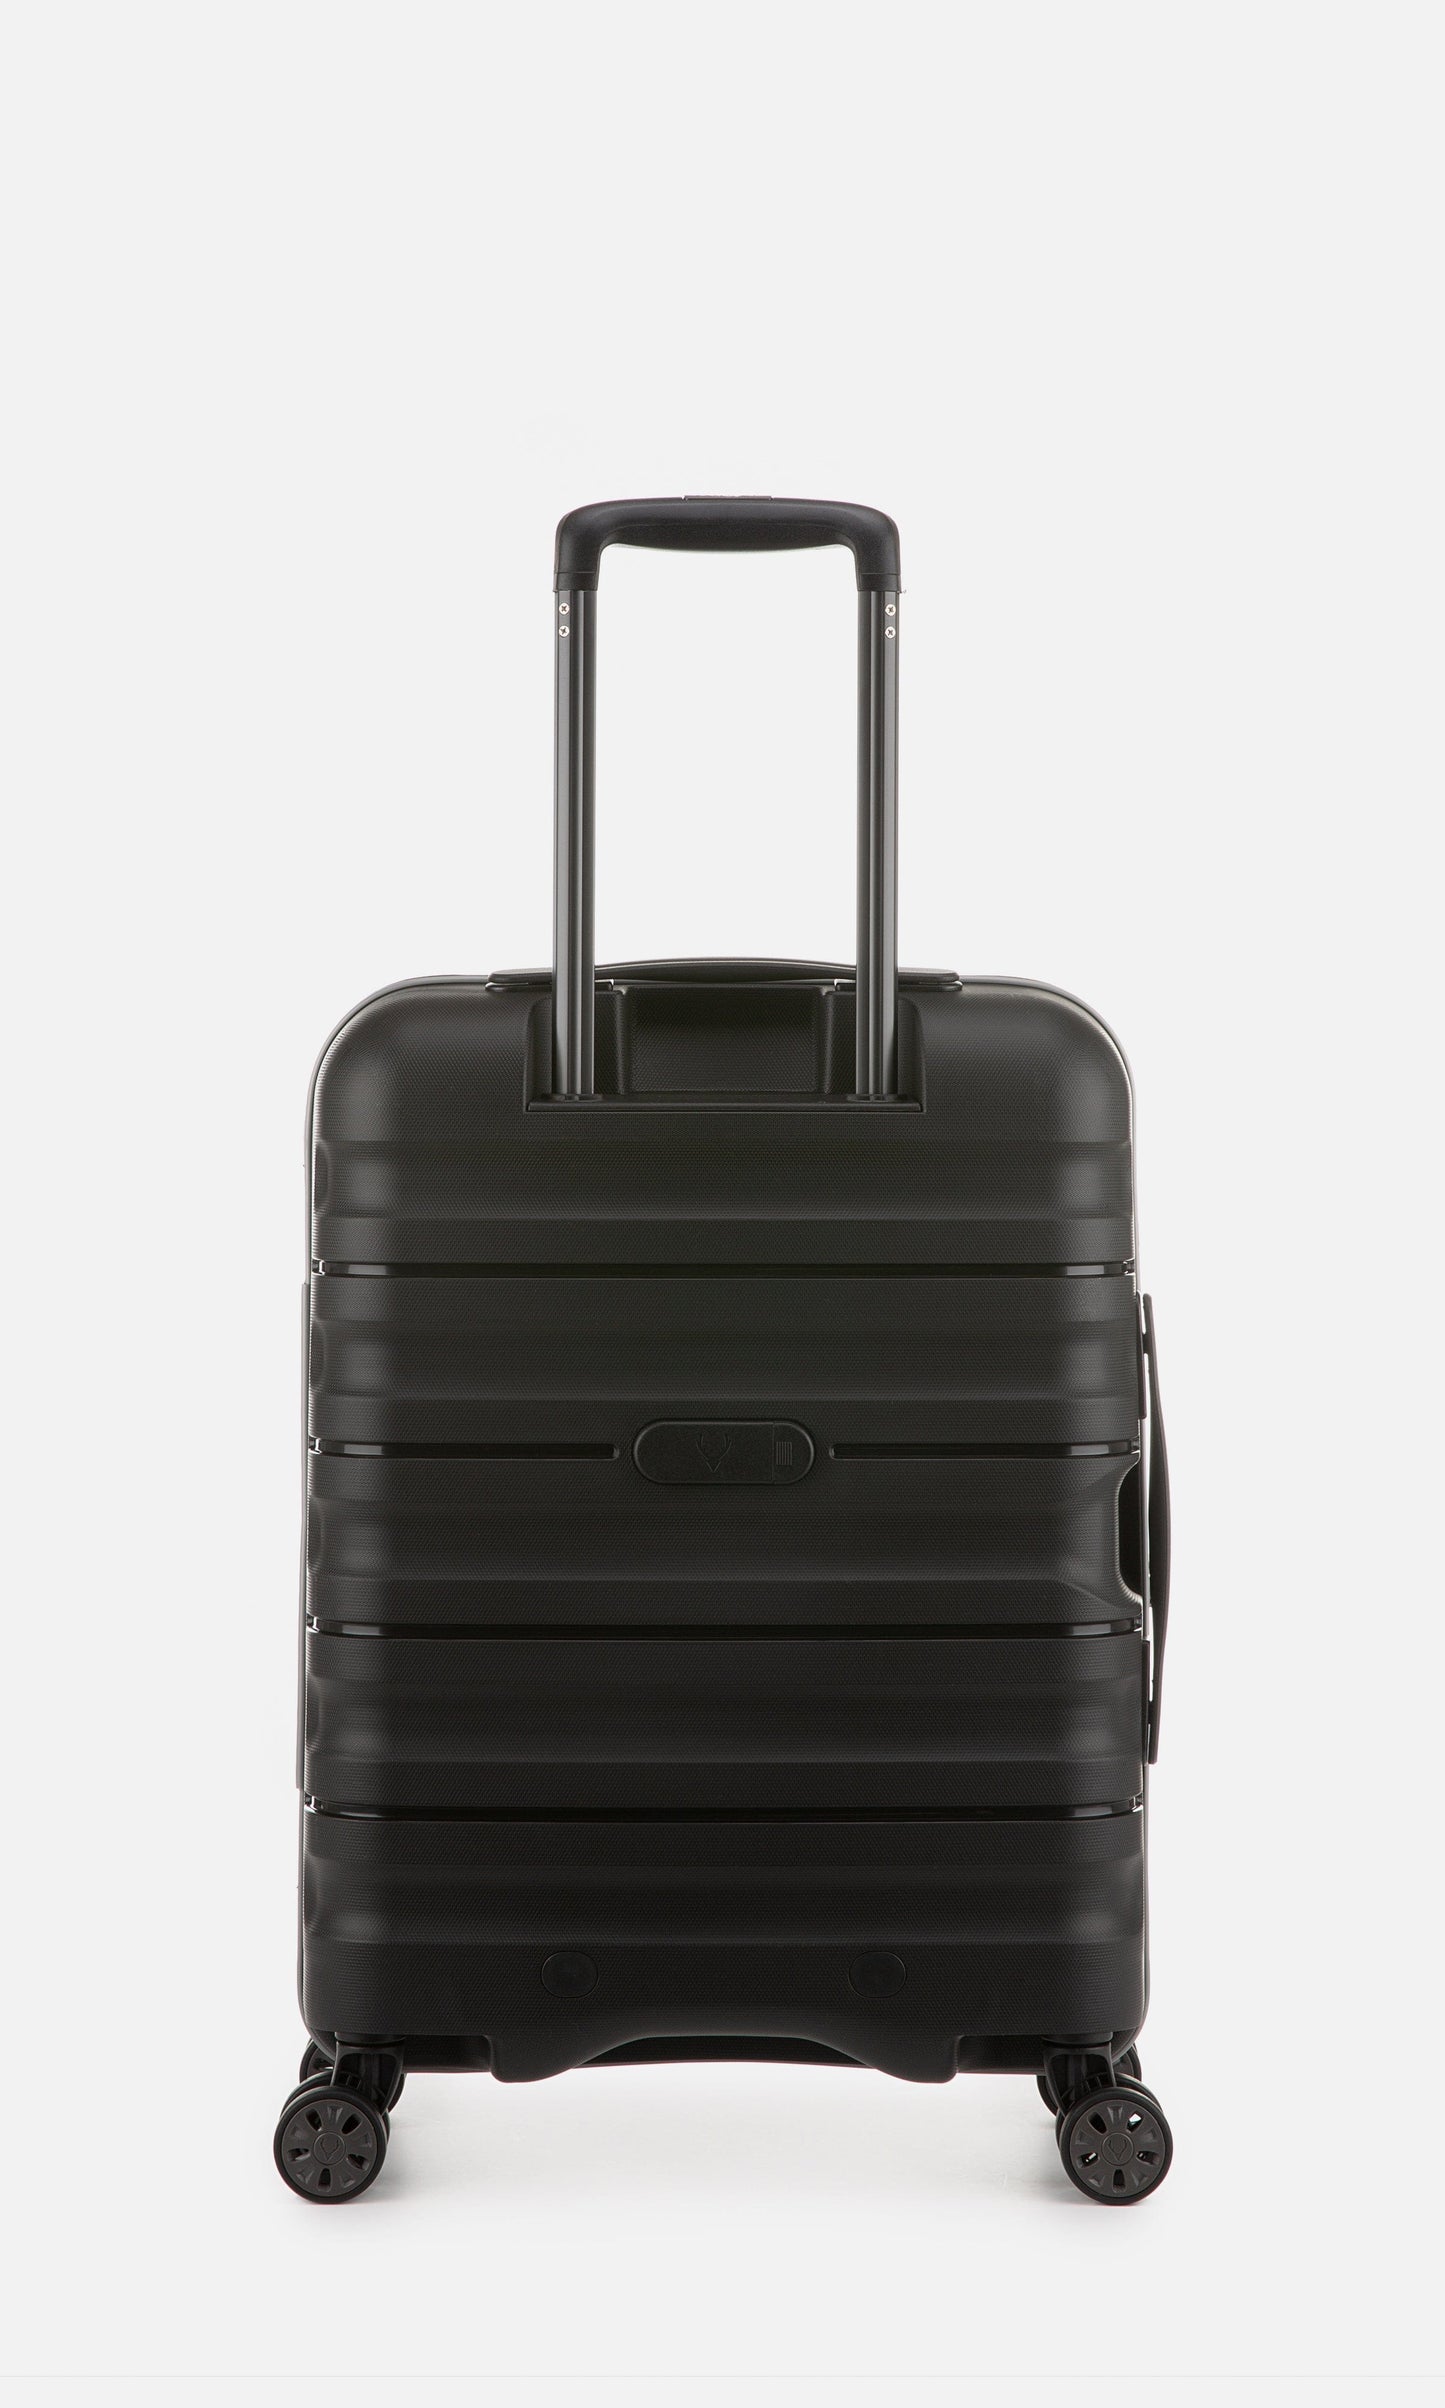 Antler Luggage -  Lincoln cabin in black - Hard Suitcases Lincoln Cabin Suitcase Black | Hard Suitcase | Antler UK